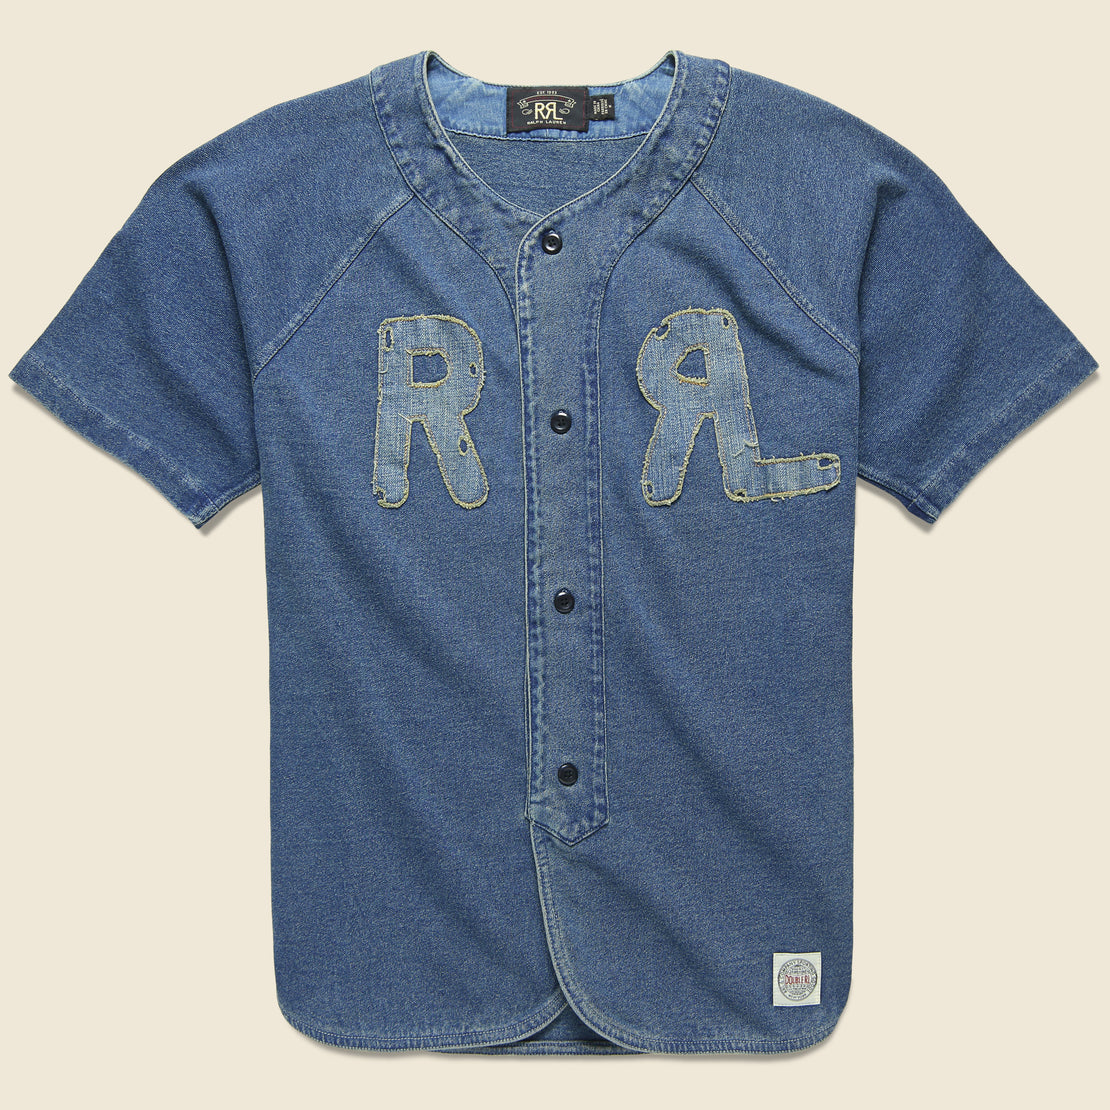 RRL Indigo Baseball Jersey - Washed Blue